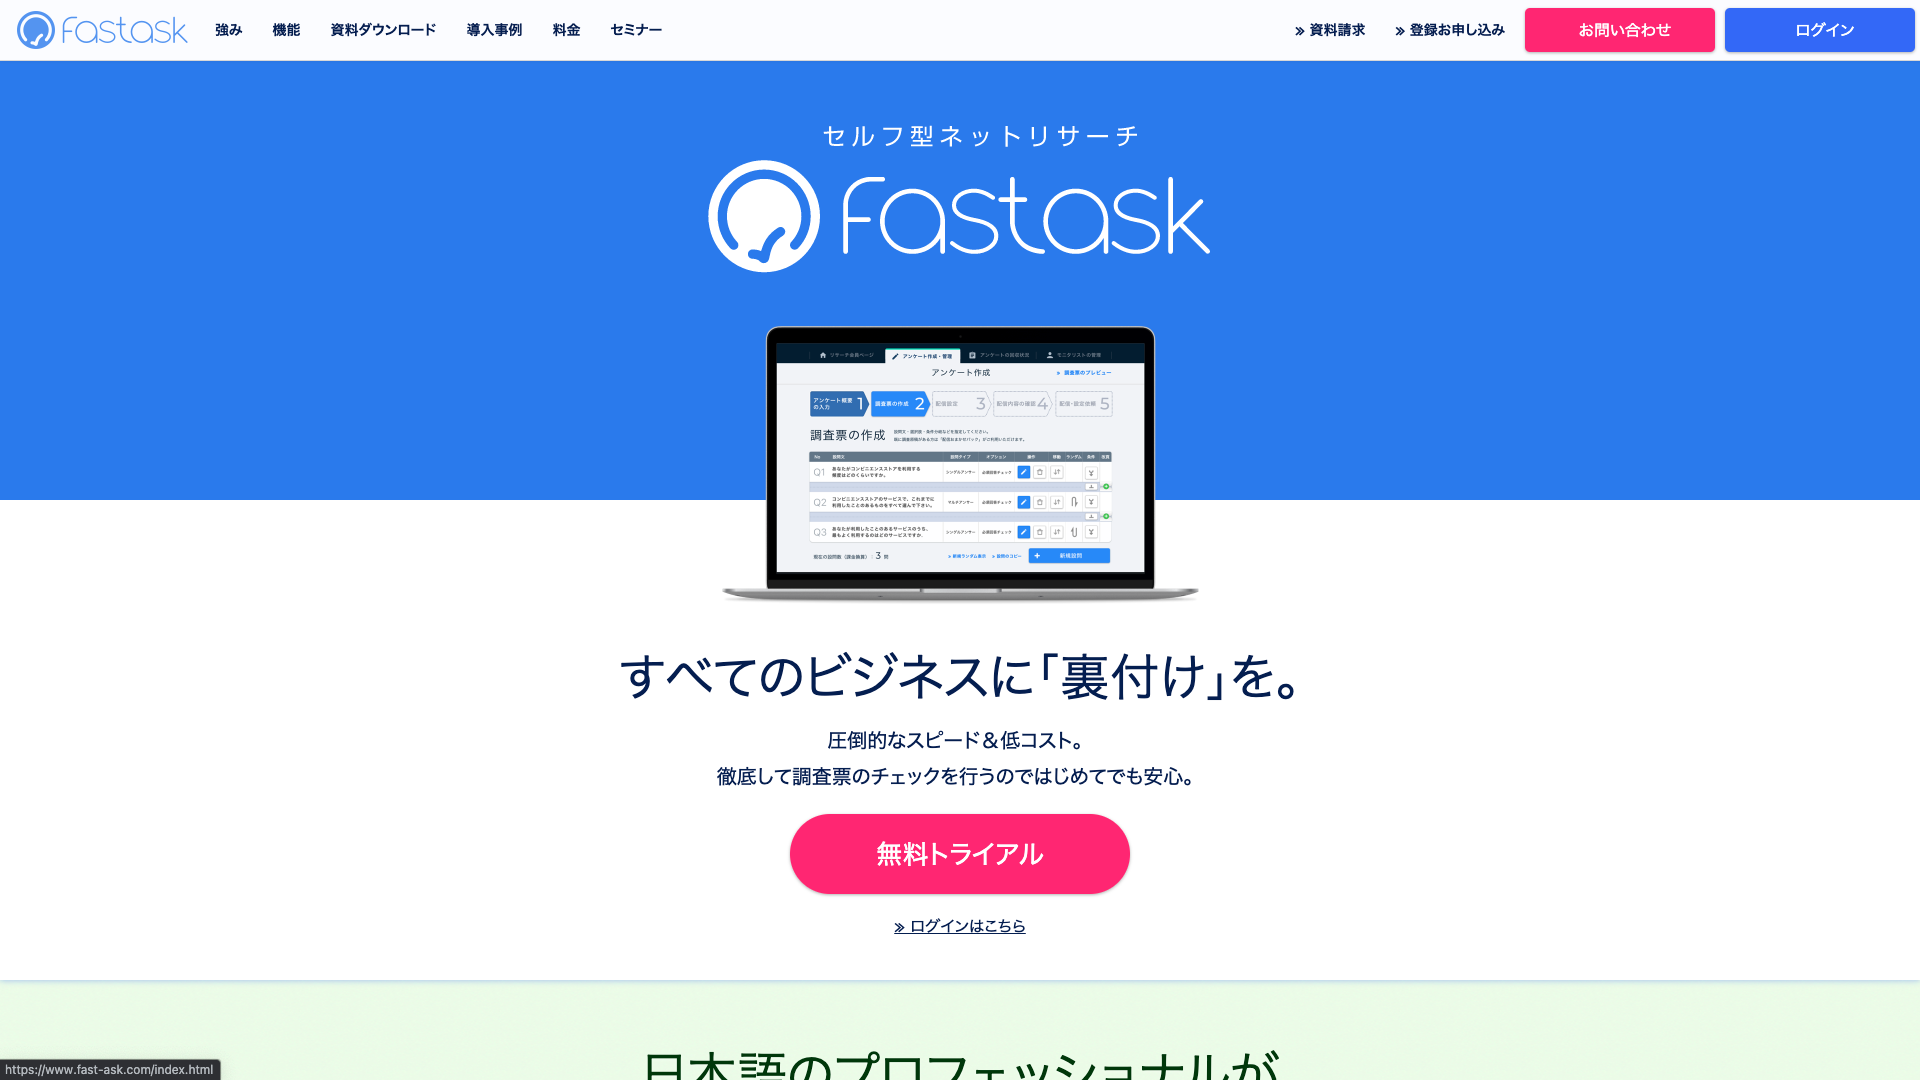 セルフ型ネットリサーチサービス【Fastask】